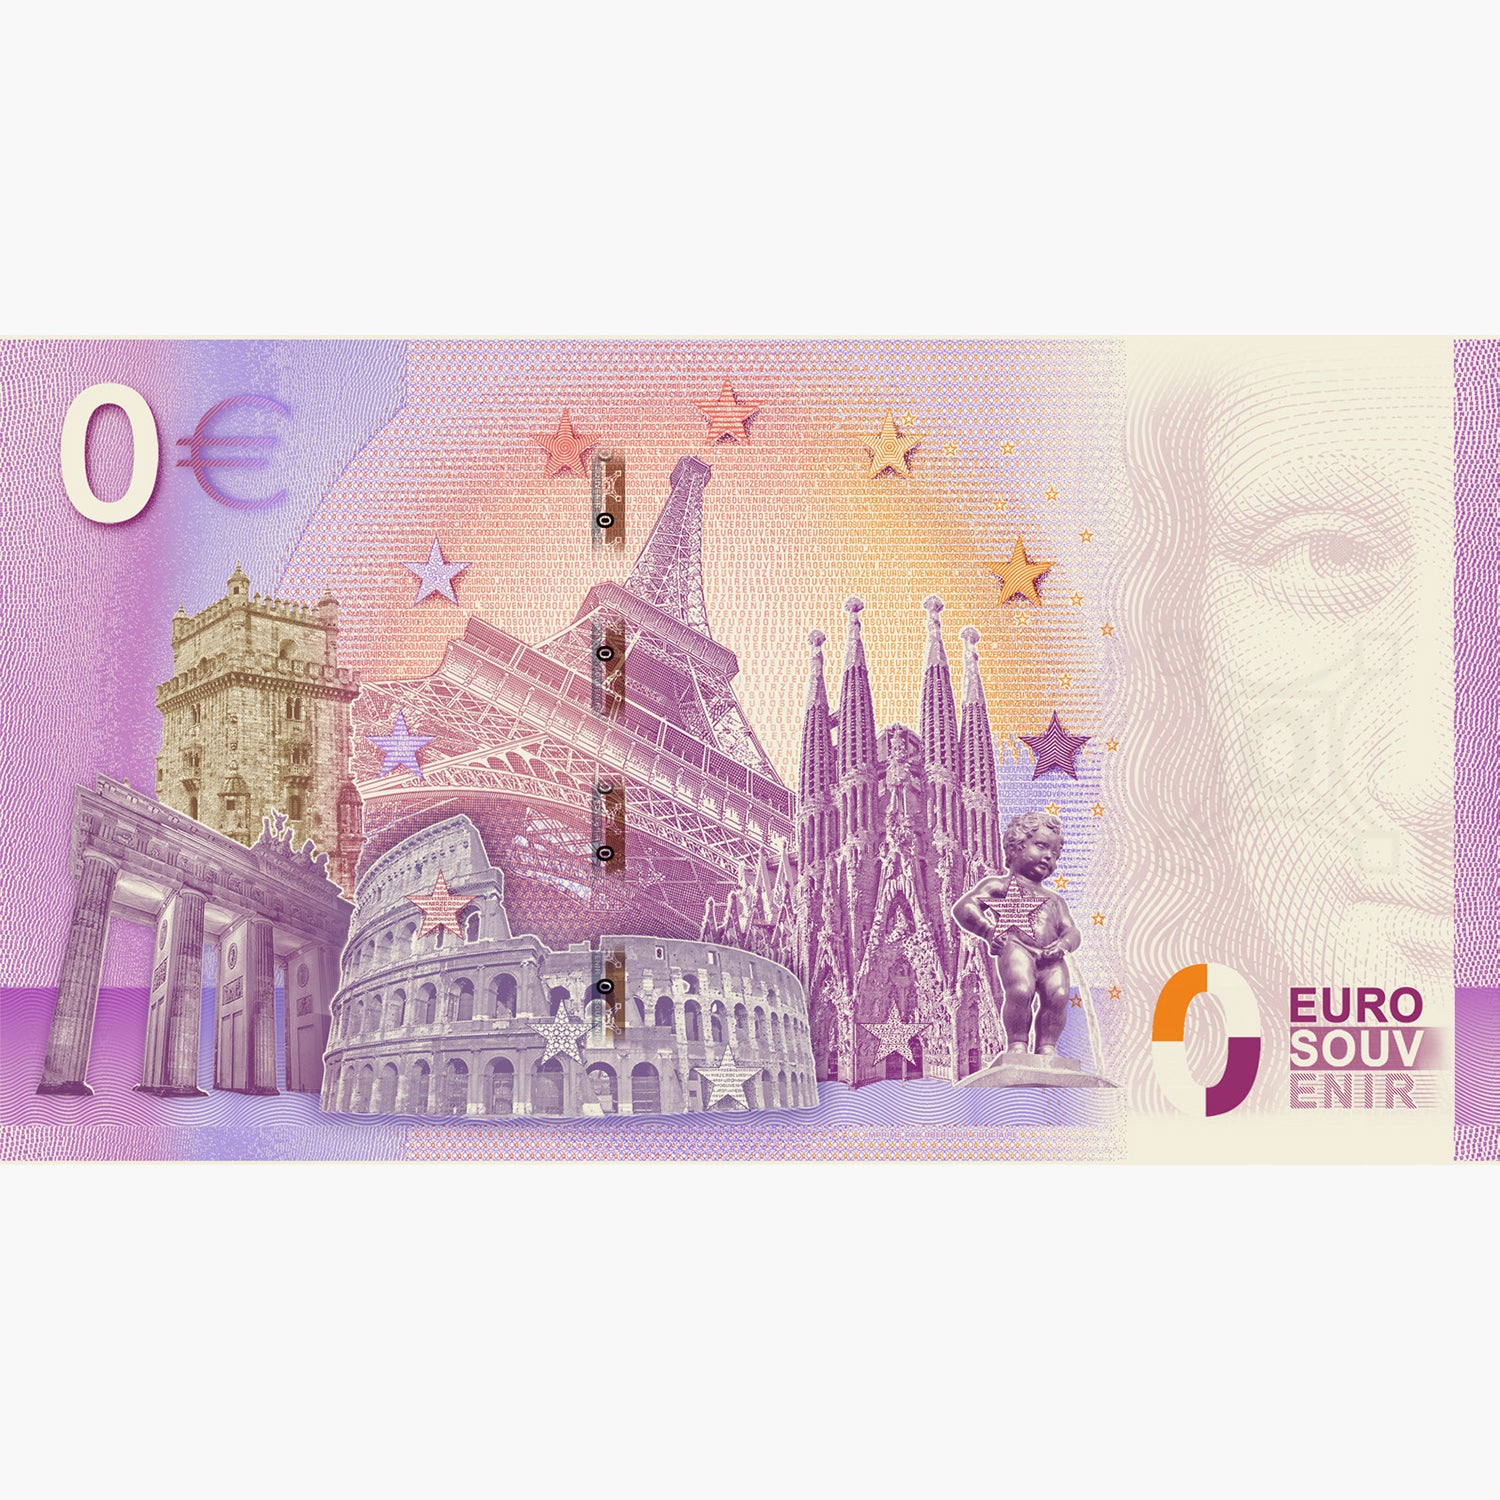 0 Euro Souvenir Note - Venice Rialto Bridge